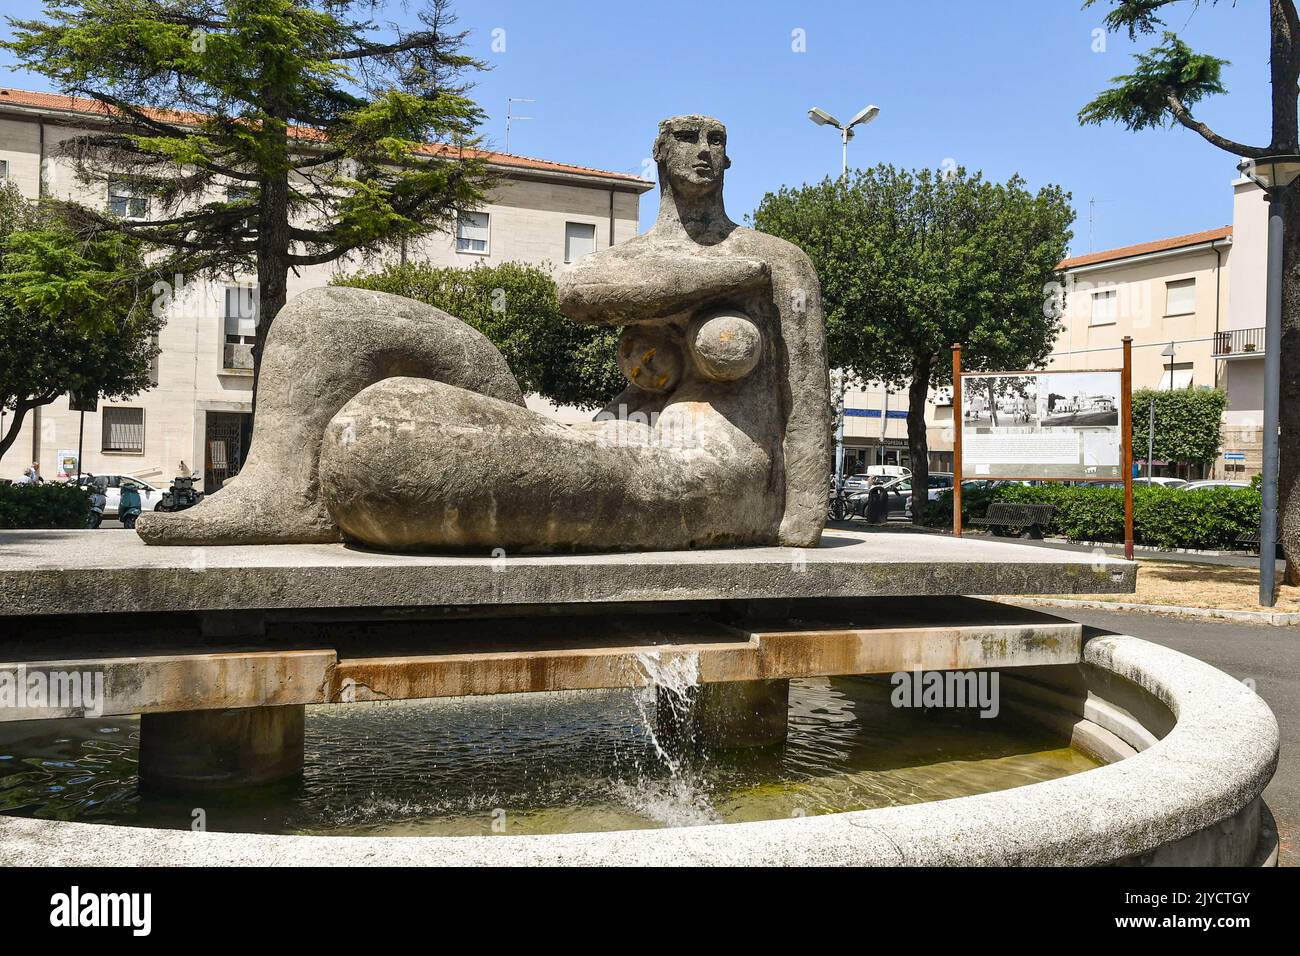 Fountain with sculpture by Massimo Villani in the public gardens of Piazza della Libertà square in the city center of Cecina, Livorno, Tuscany, Italy Stock Photo